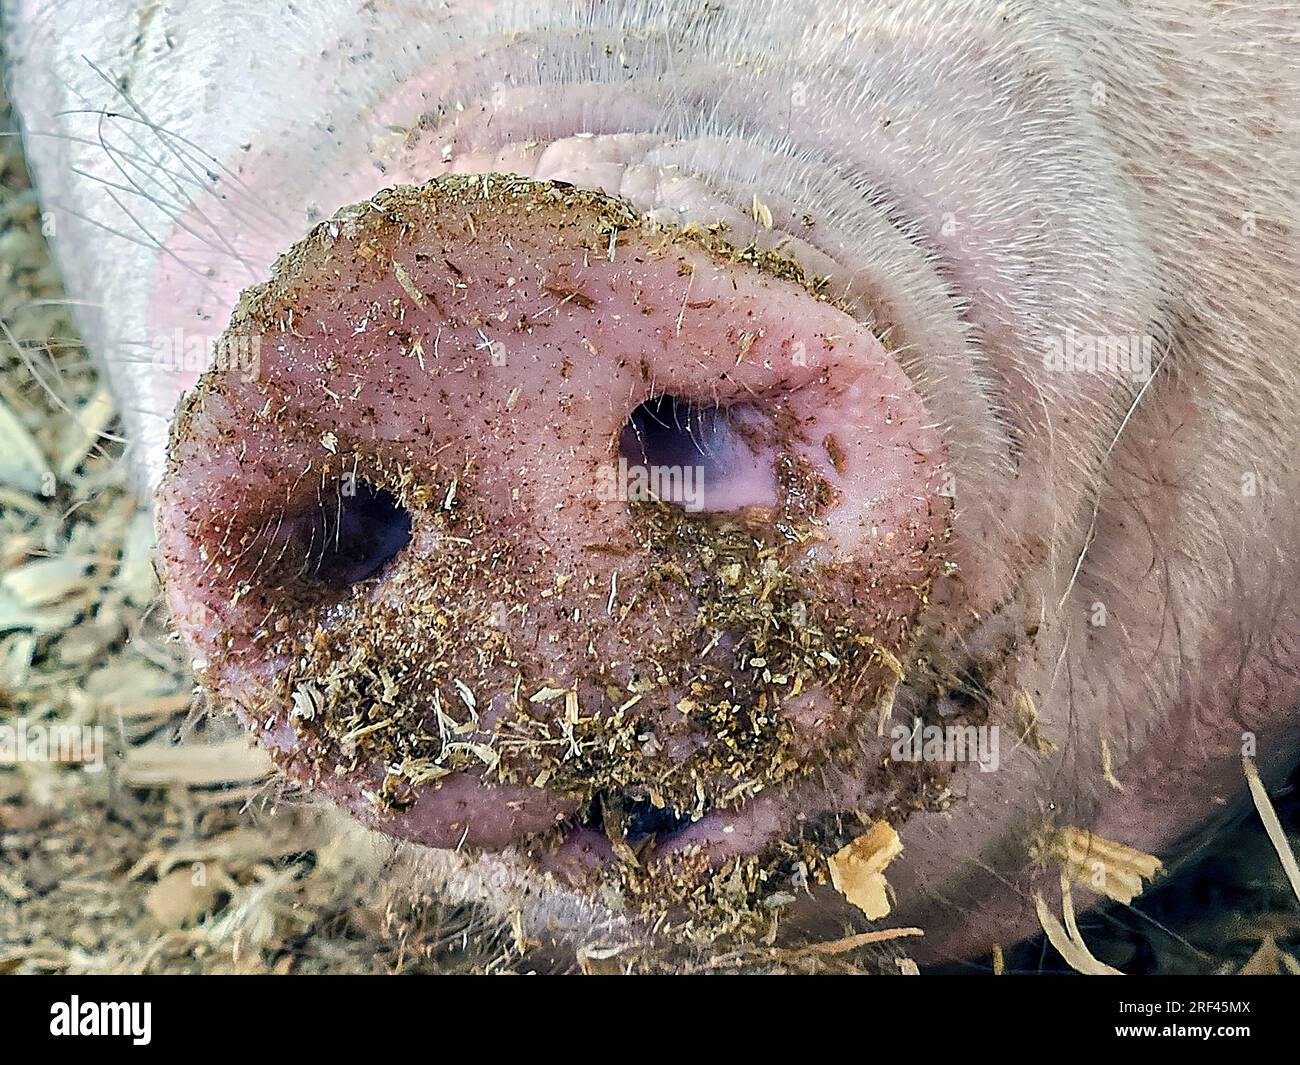 Primer plano extremo del hocico de un cerdo cubierto de suciedad y paja Foto de stock